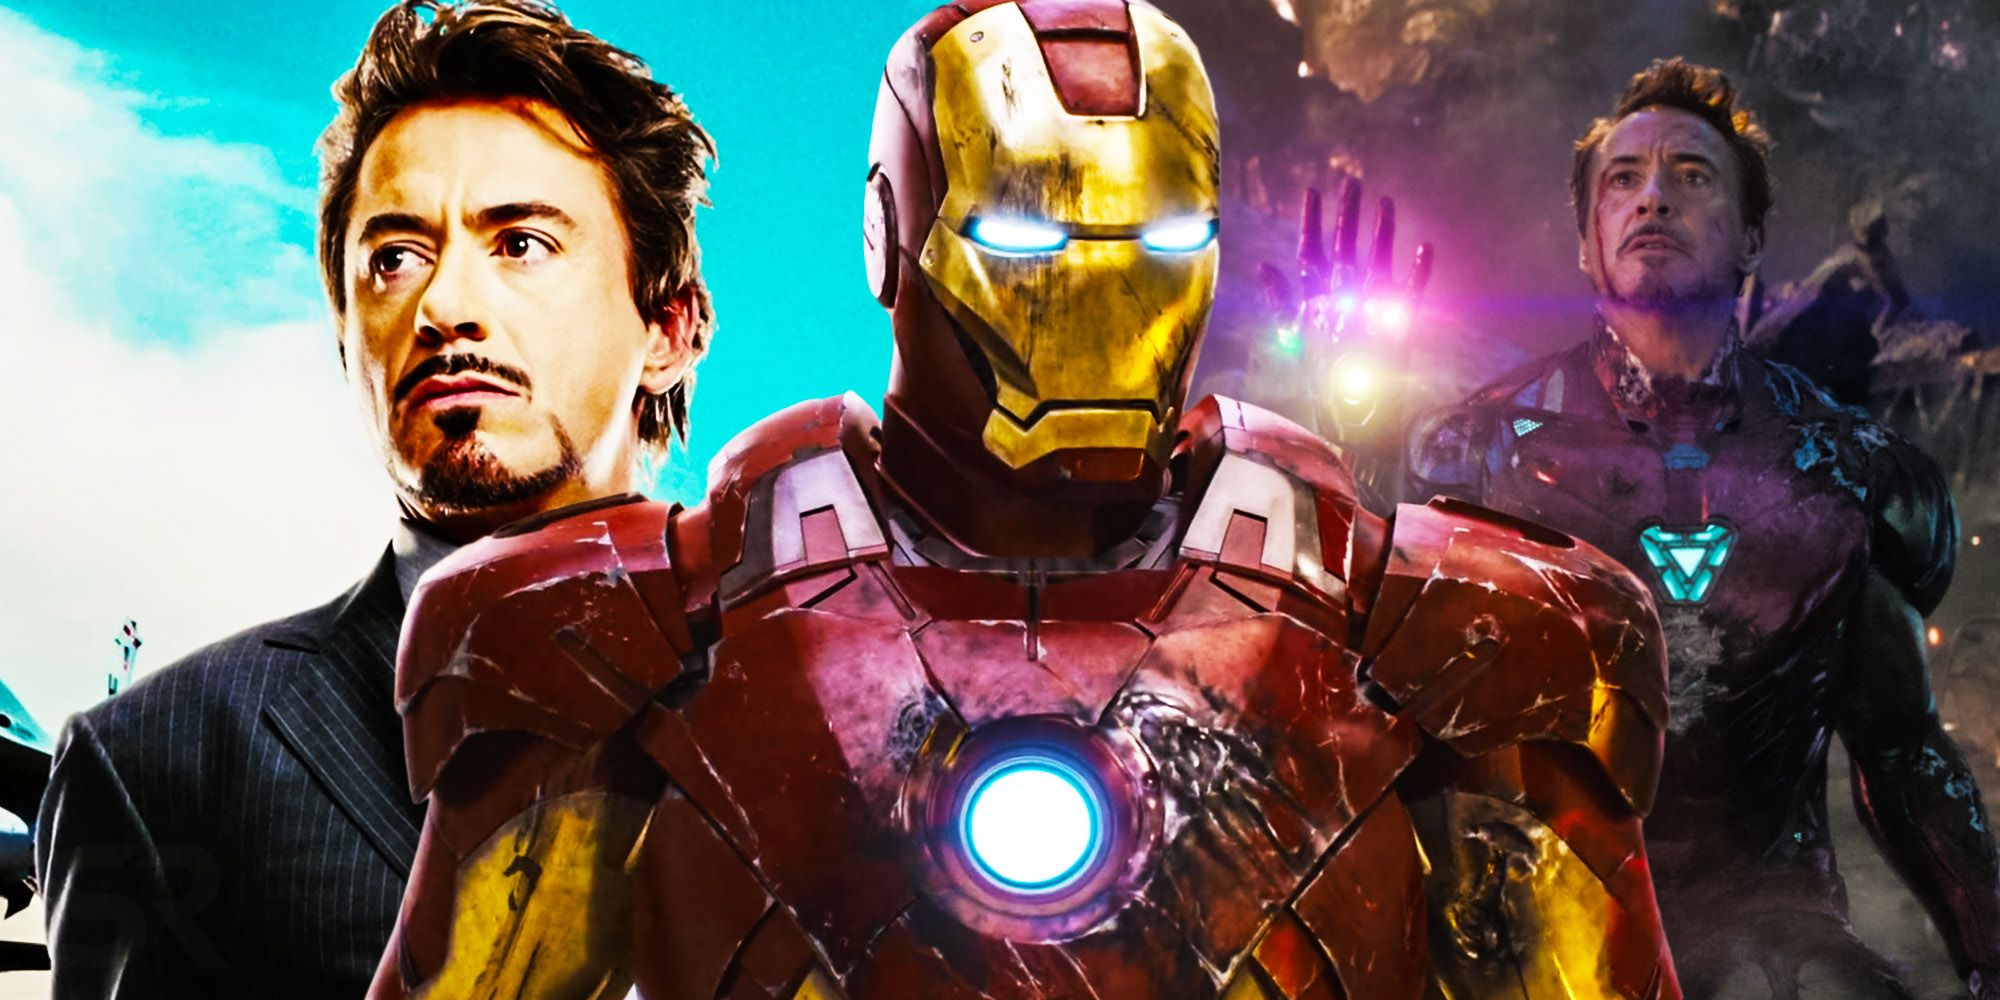 Iron man tony stark the avengers avengers endgame